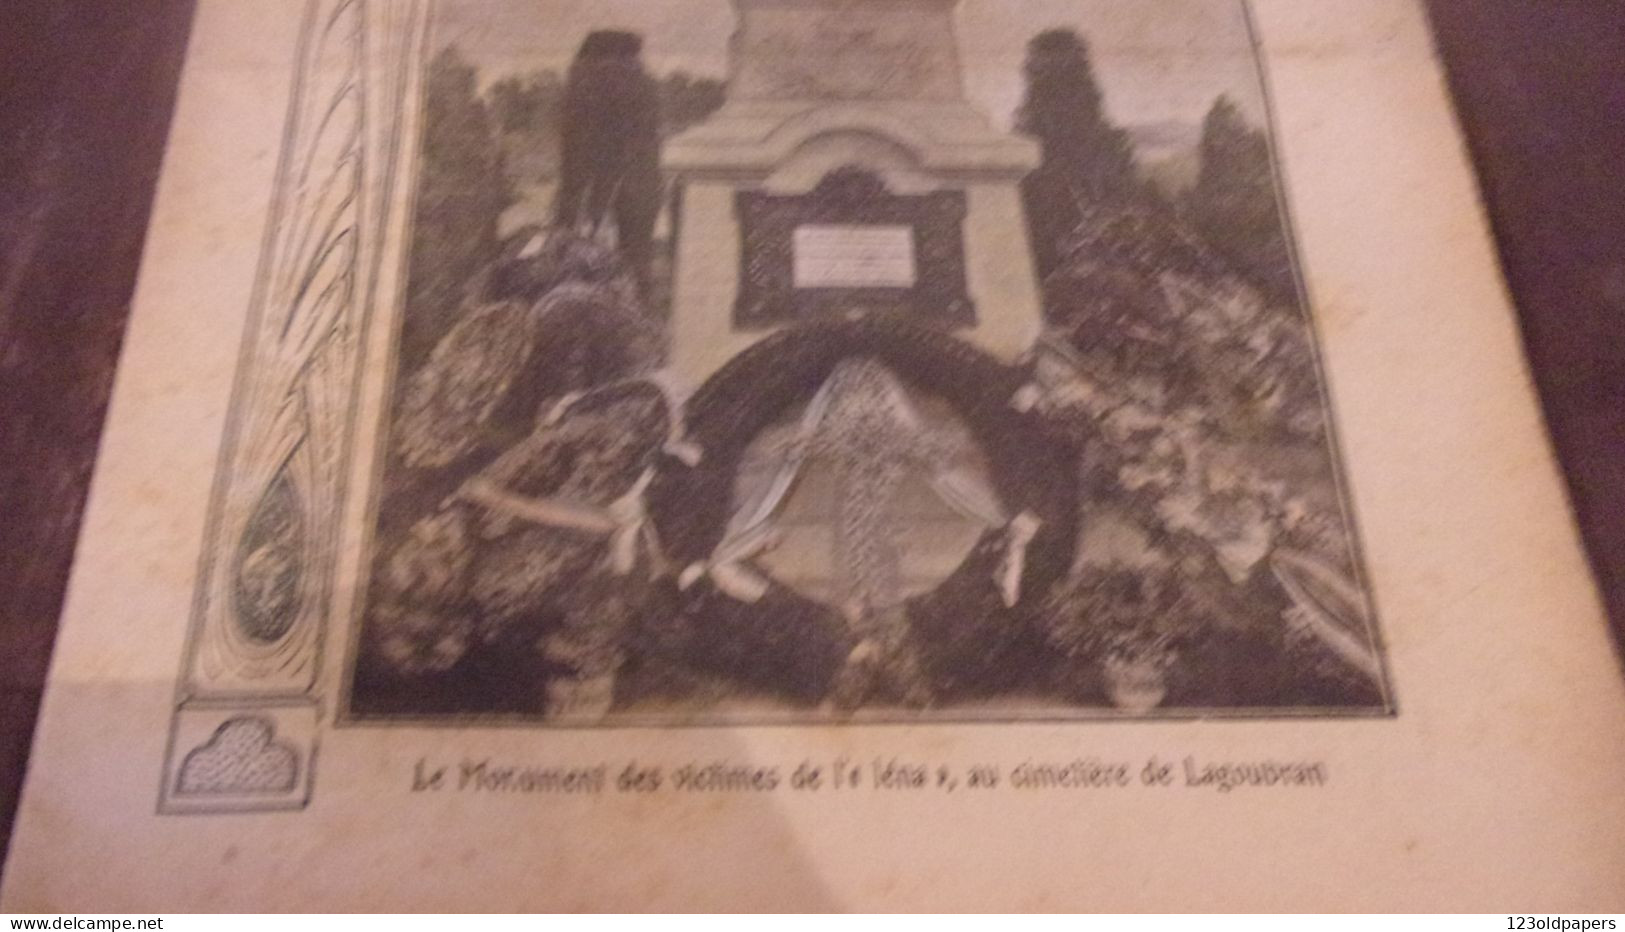 Revue "Le Pèlerin" 1908 VAR TOULON LAGOUBRAN MONUMENT IENA - 1900 - 1949